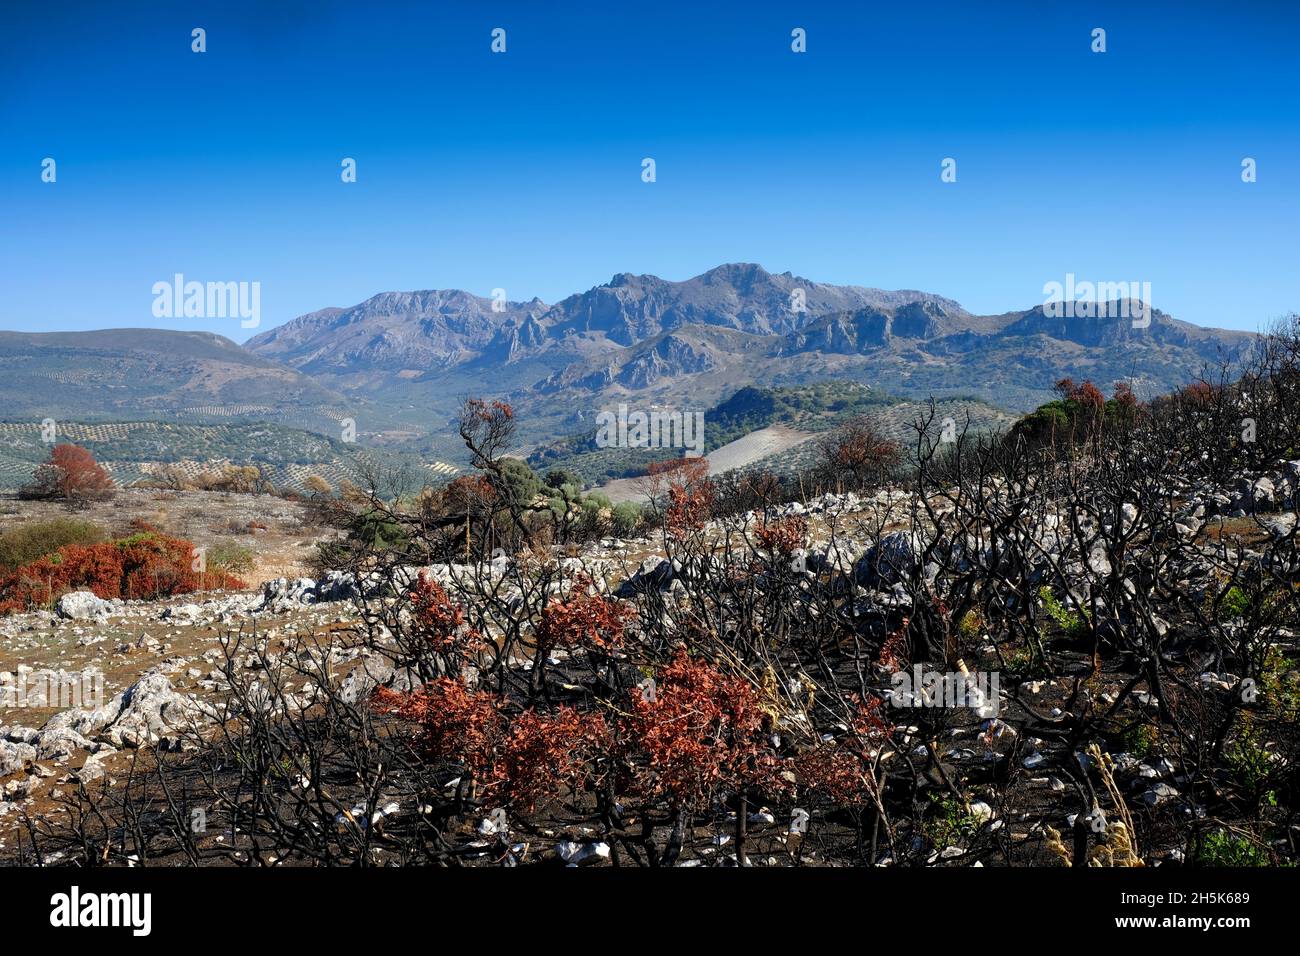 Paesaggio di alberi e piante bruciati e singolari dopo un incendio estivo nella regione di Algar del Parco Naturale di Sierras Subbeticas, Andalusia, Spagna Foto Stock